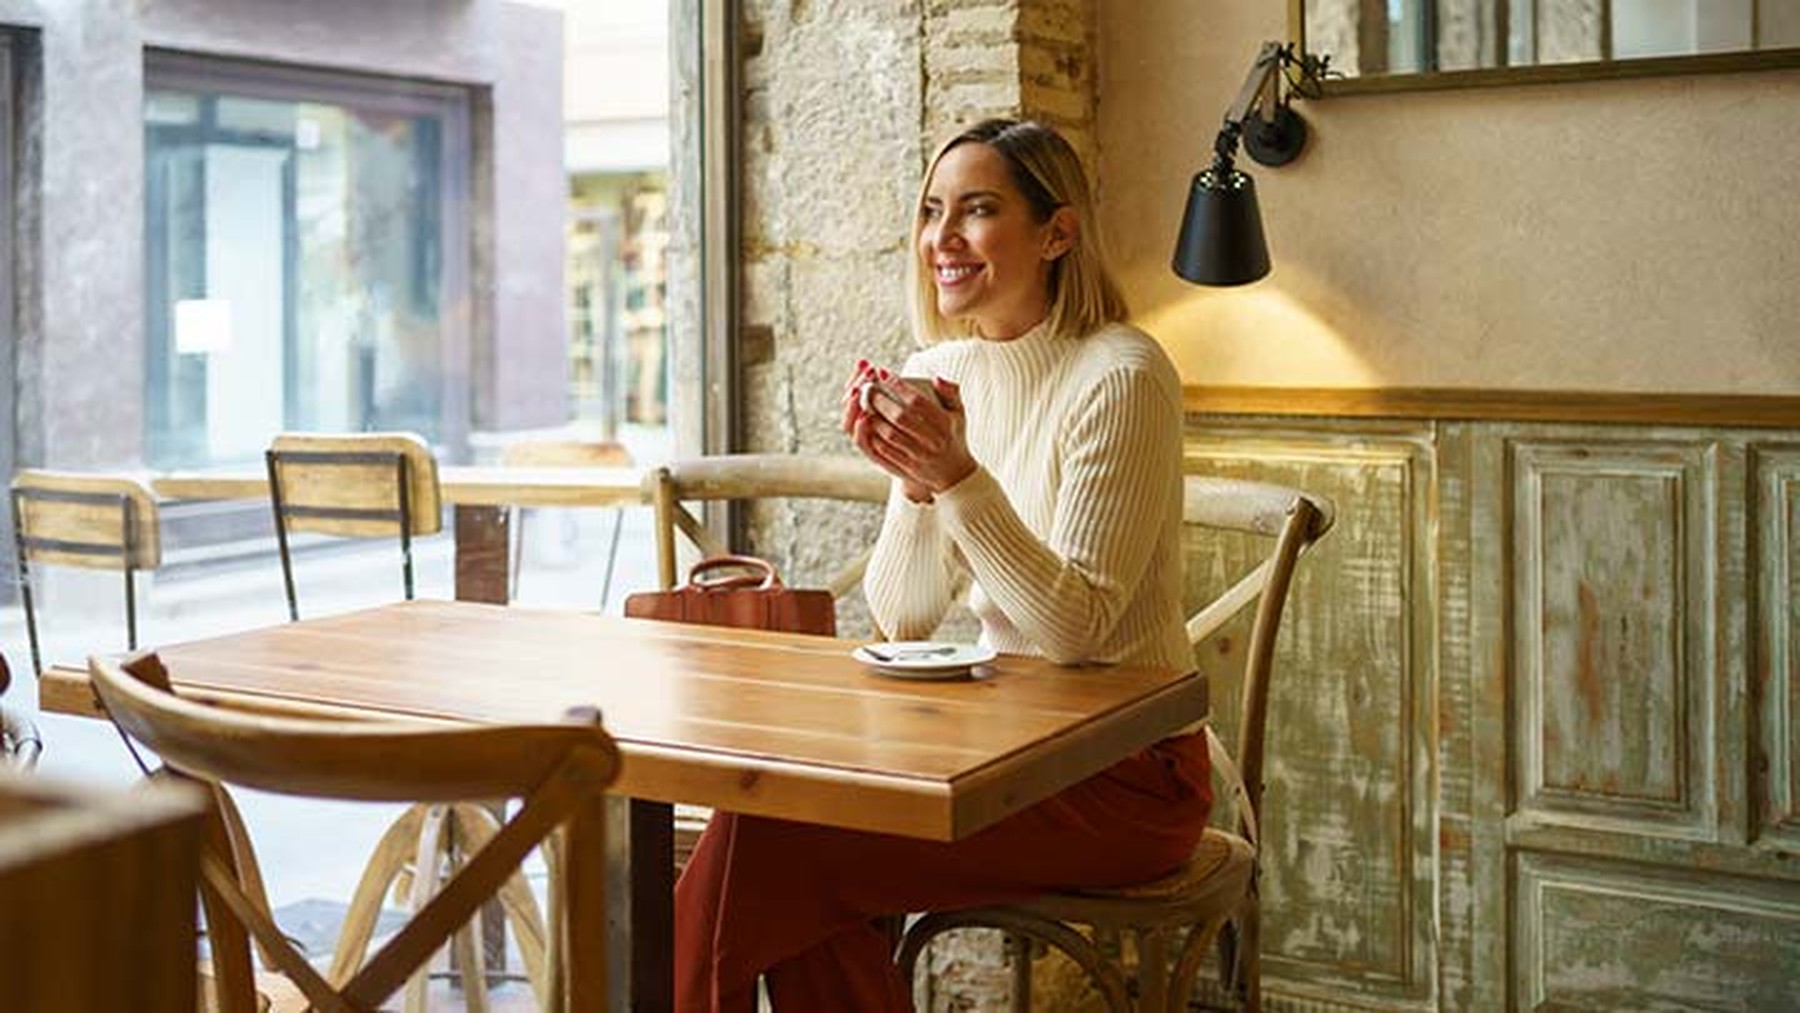 Mujer sonriente sentada en una cafetería con una taza de café en sus manos.